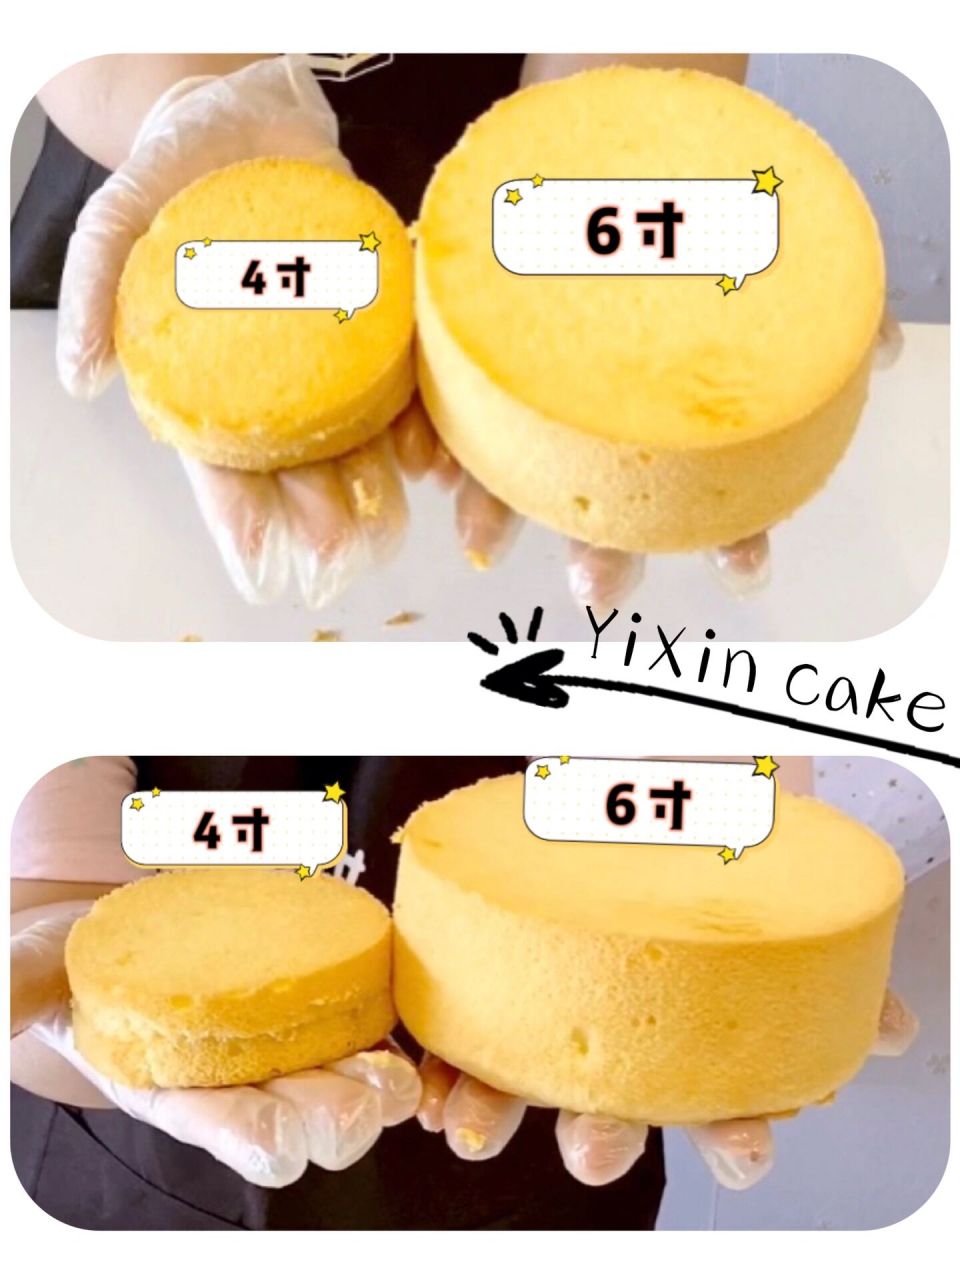 4寸5寸6寸蛋糕尺寸对比图片